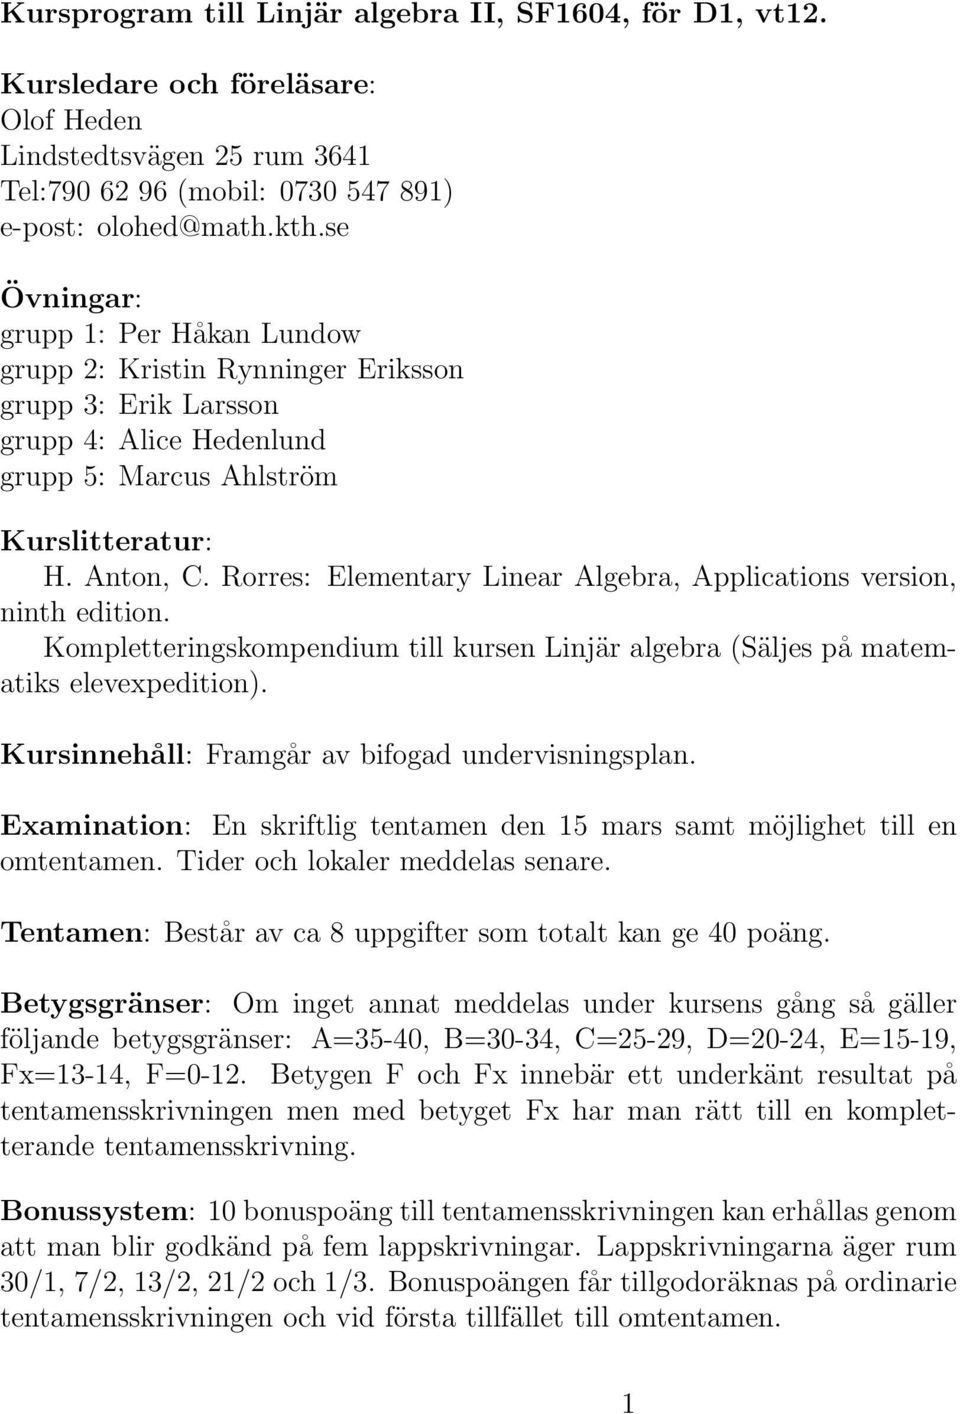 Rorres: Elementary Linear Algebra, Applications version, ninth edition. Kompletteringskompendium till kursen Linjär algebra (Säljes på matematiks elevexpedition).